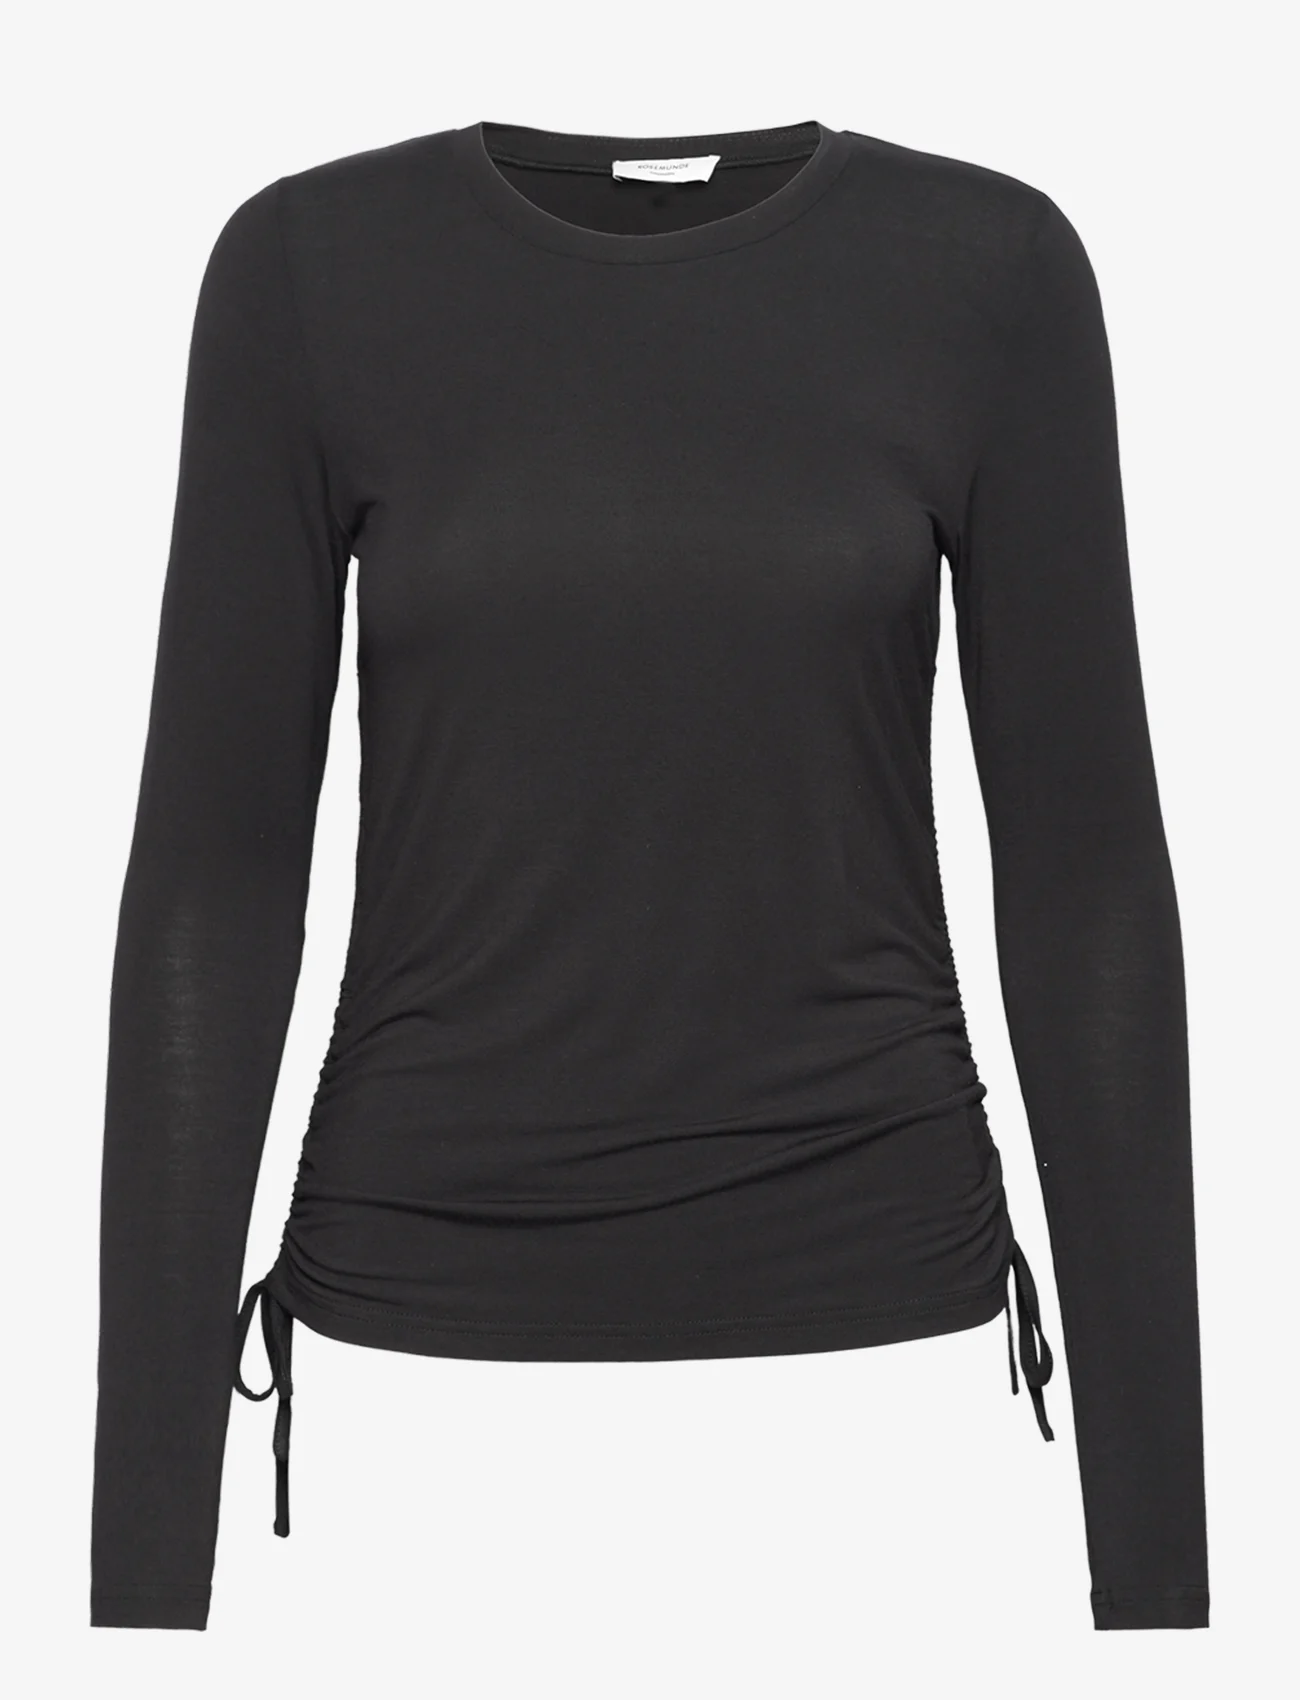 Rosemunde - Viscose t-shirt - langärmlige tops - black - 0